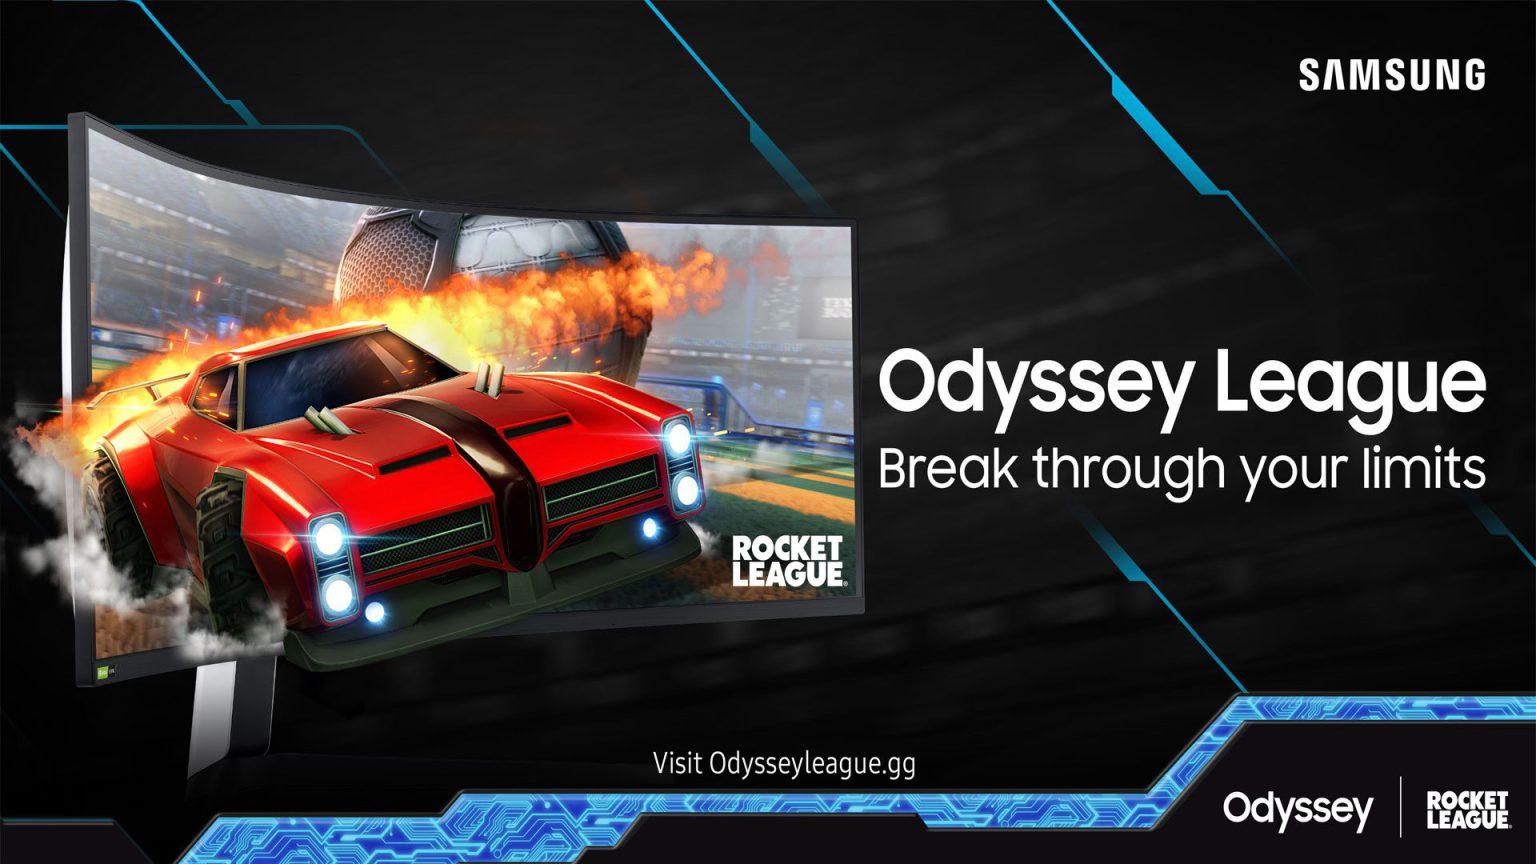 Con motivo de los nuevos modelos G70A, G50A y G30A de la gama Odyssey, Samsung presenta la vuelta de su liga 'Odyssey League'.